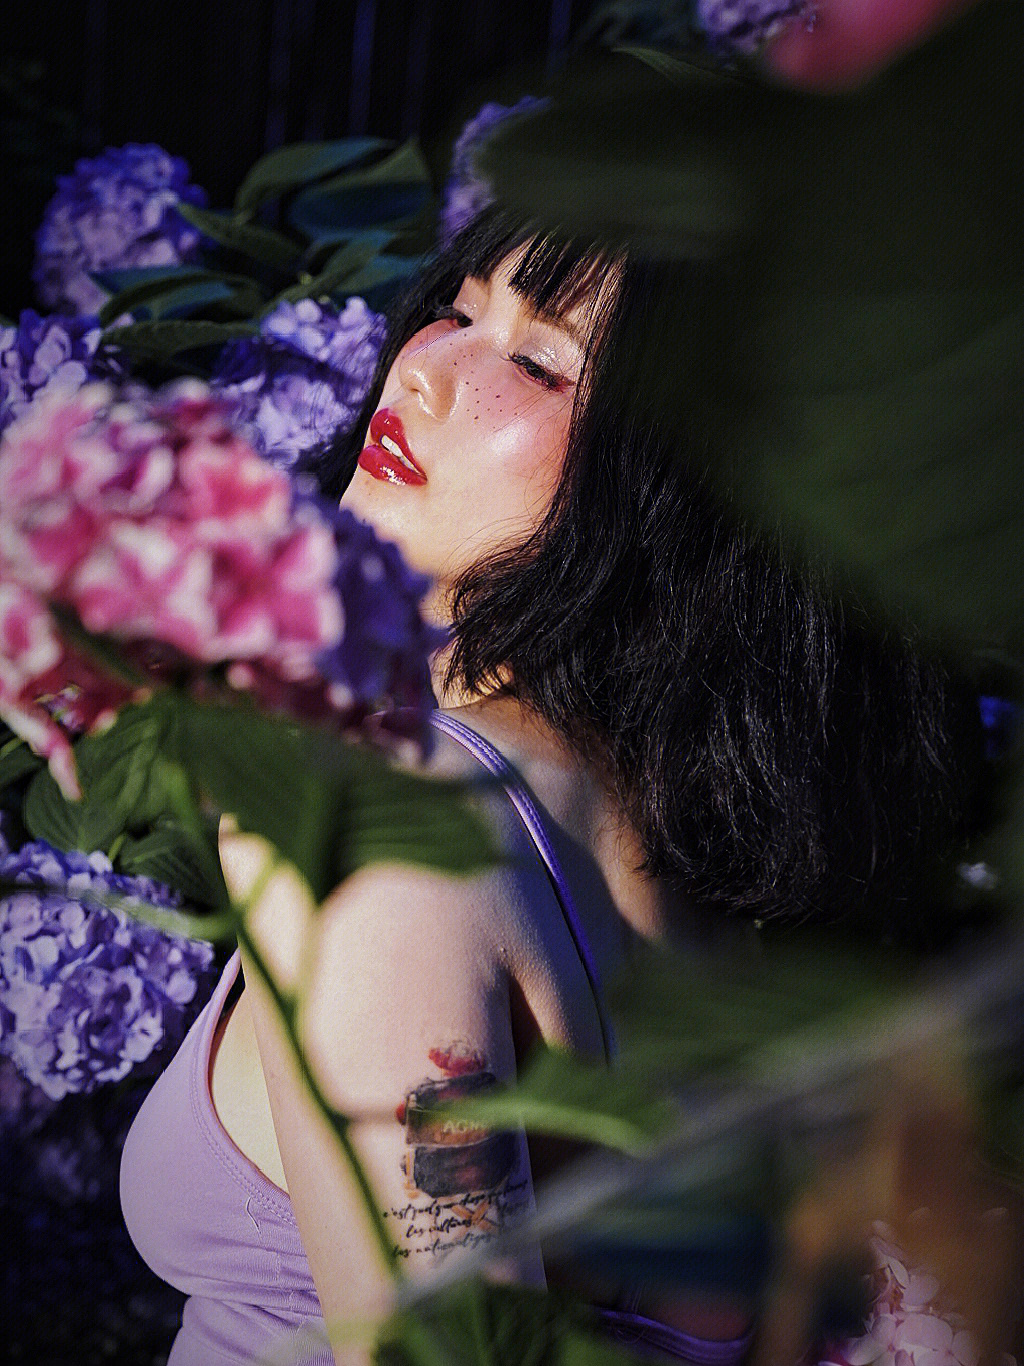 一组照片讲述一个故事·我的灵感来自于蜷川实花的《恶女花魁》 日本